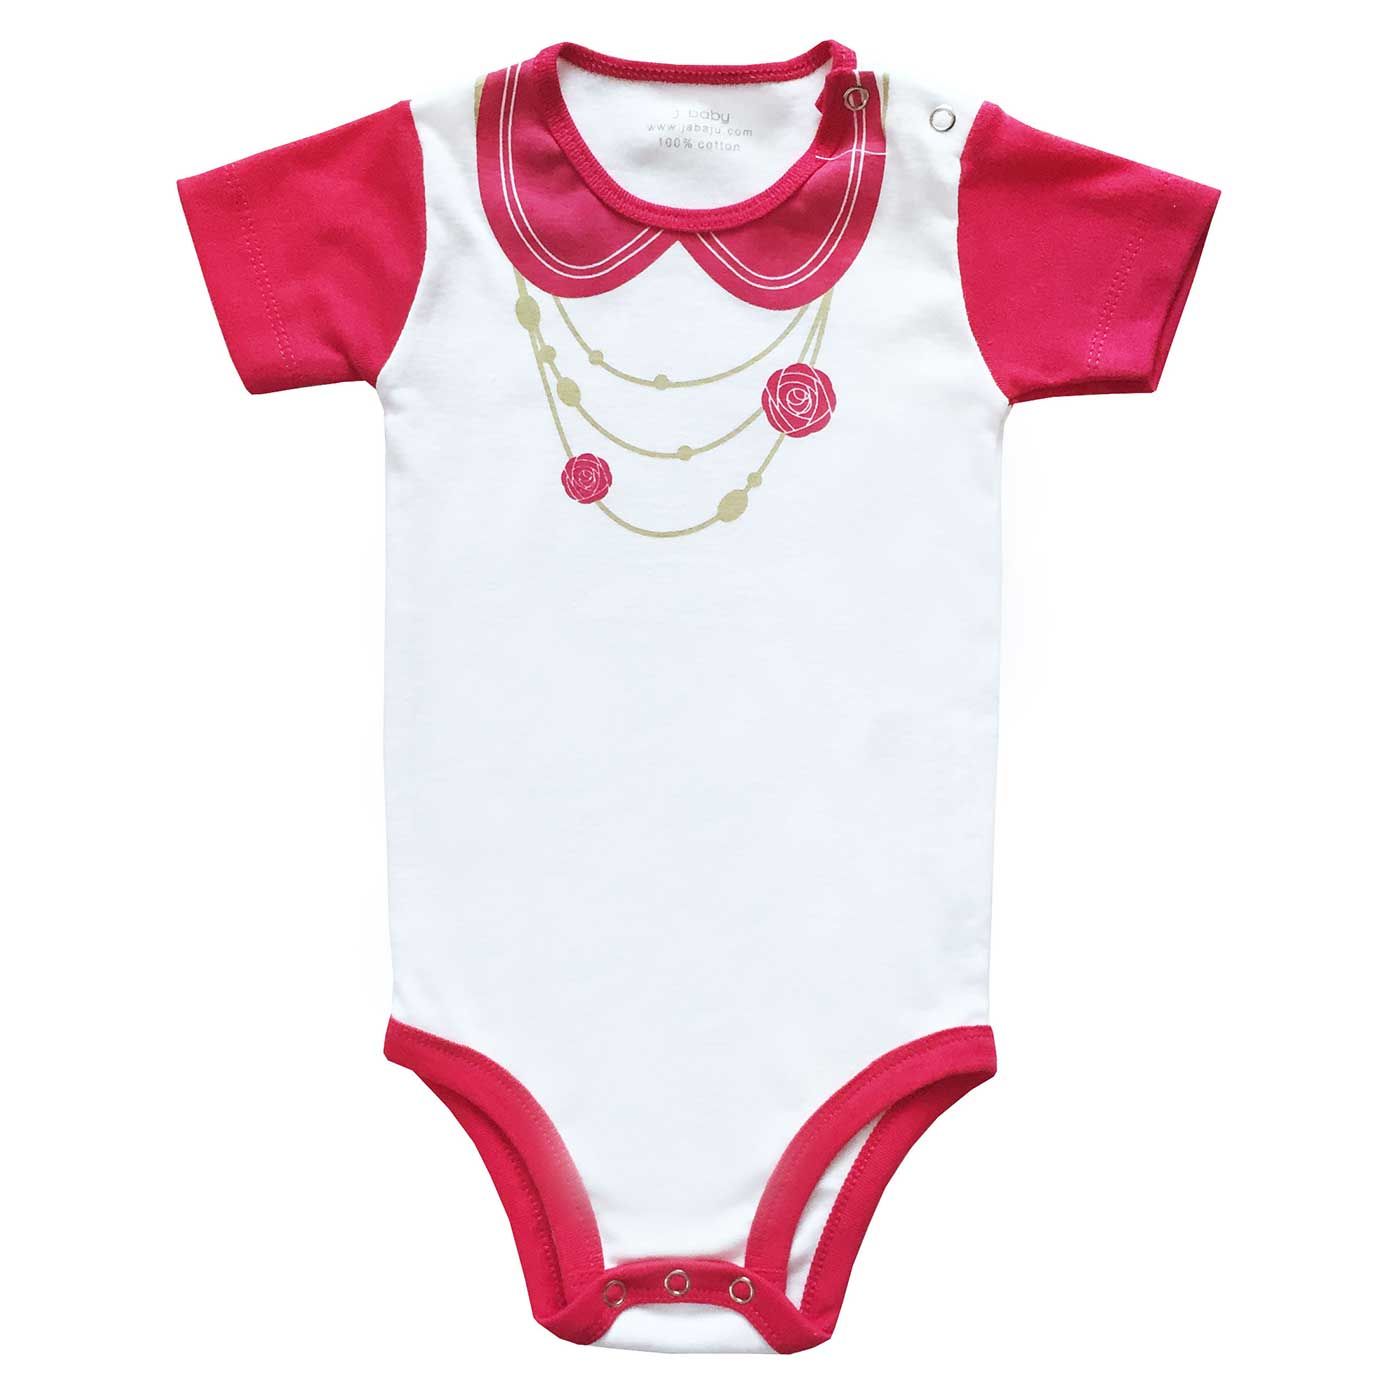 J-Baby Bodysuit Girl Pink Fanta Kalung Bunga 3-12 month - 1